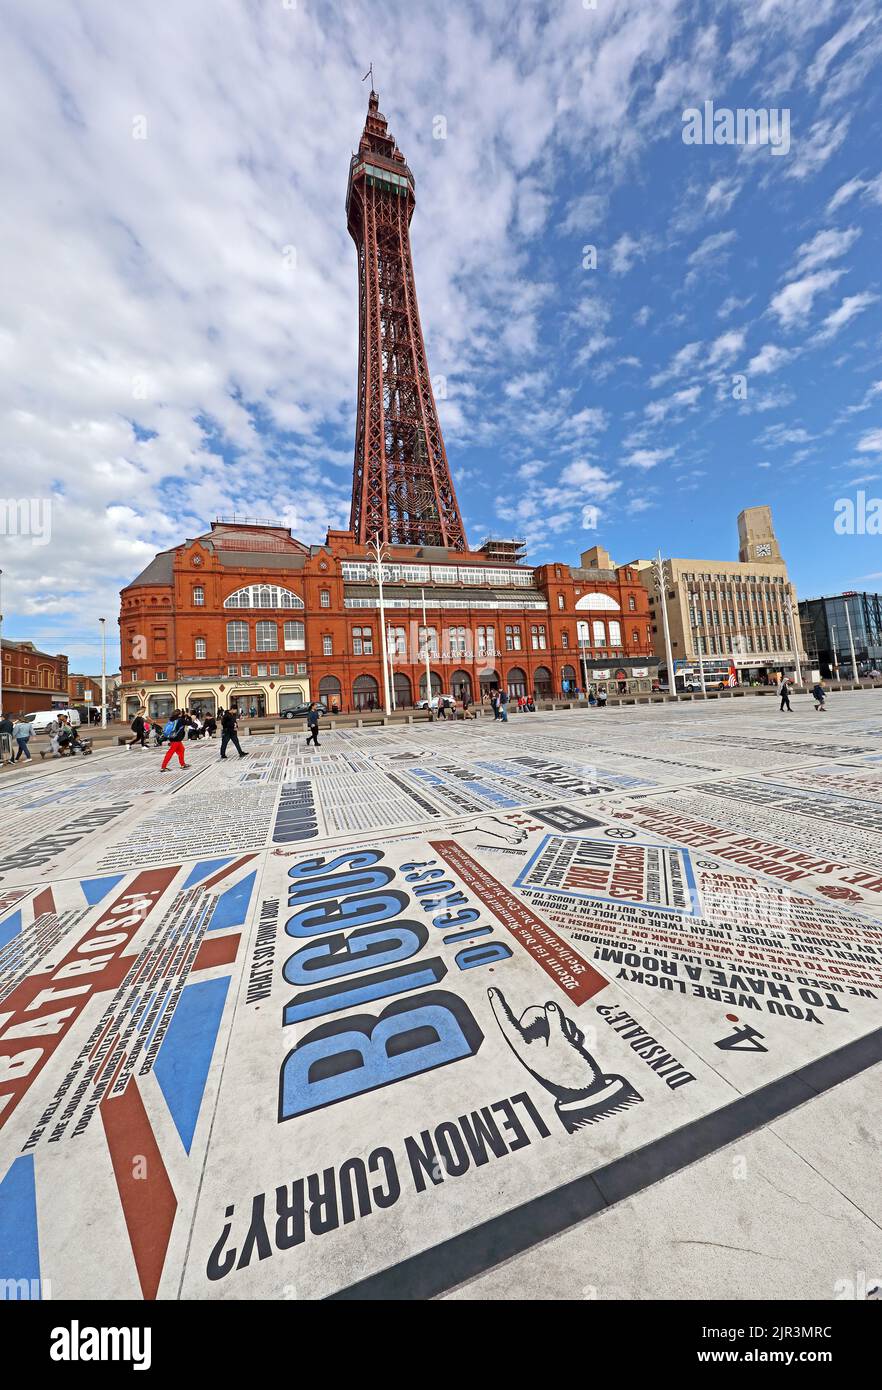 La tour Blackpool avec des actes inscrits en premier plan, un jour d'été, la promenade, Blackpool, Lancashire, Angleterre, Royaume-Uni, FY1 4BJ Banque D'Images